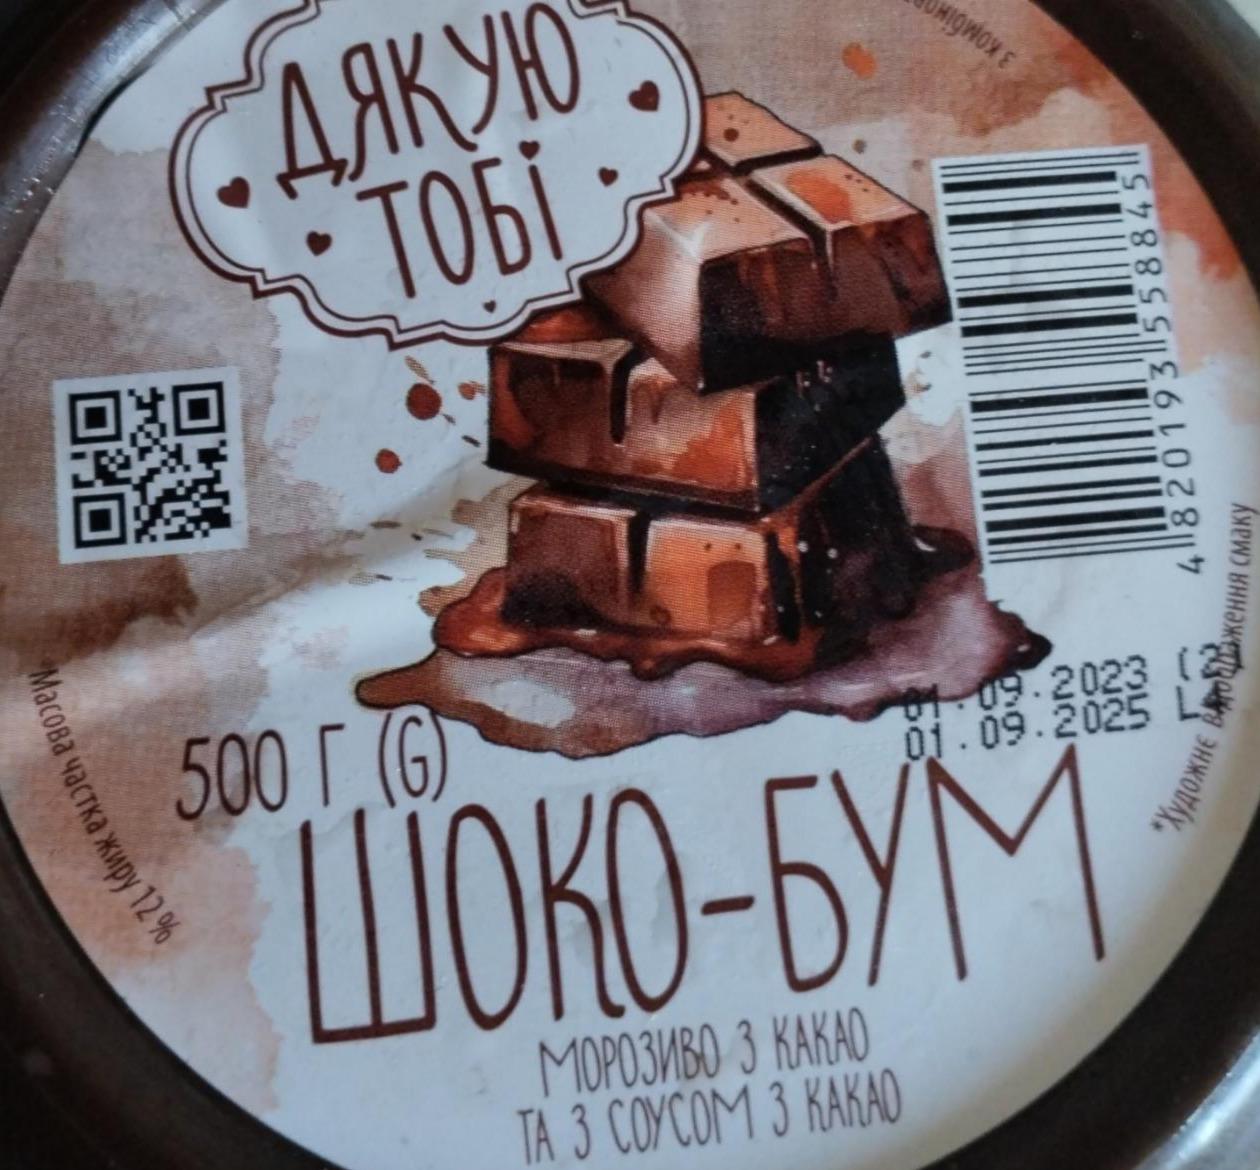 Фото - Морозиво Шоко-Бум з комбінованим складом сировини з какао та з соусом з какао Дякую тобі